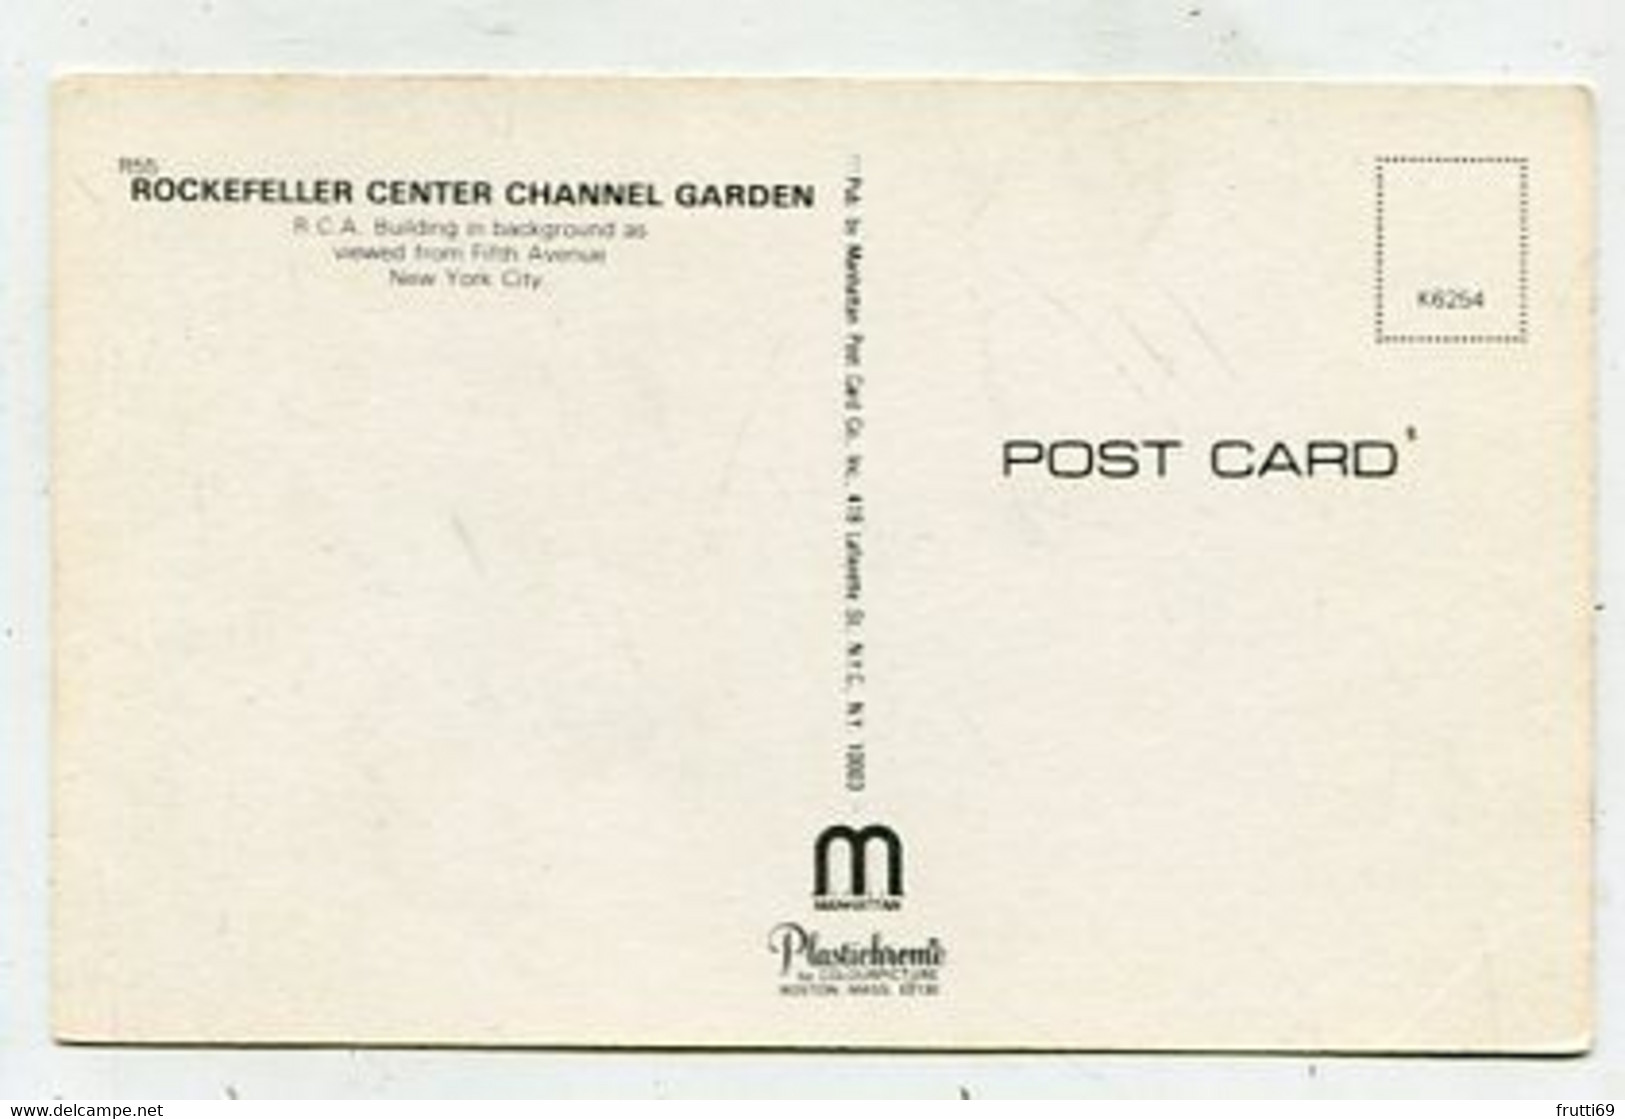 AK 04888 USA - New York City - Rockefeller Center Chanel Garden - Parks & Gardens